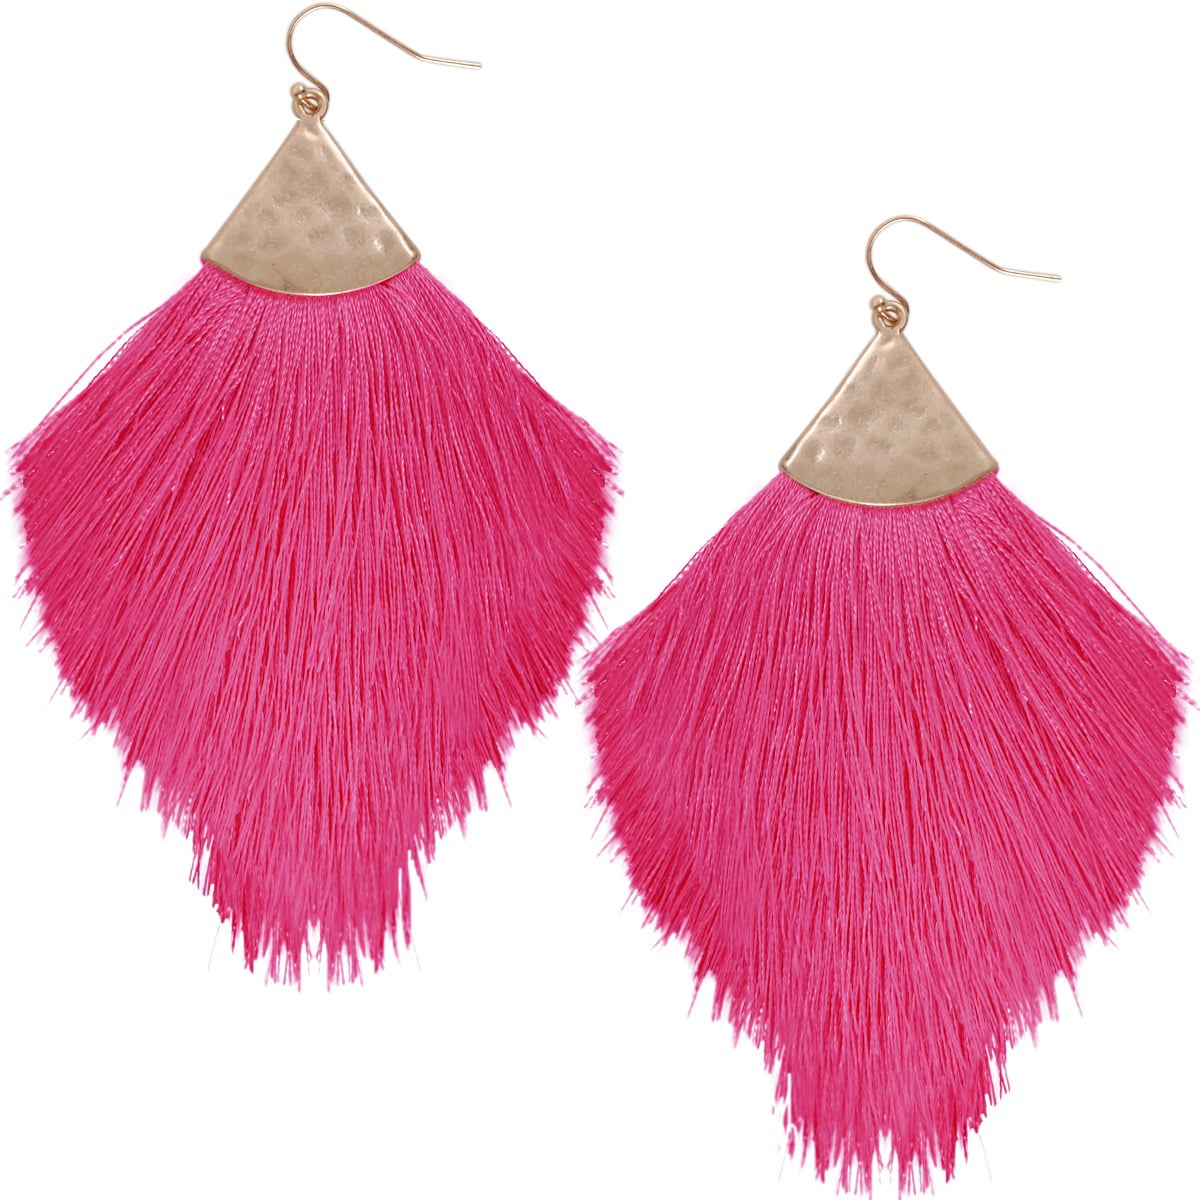 Gold tone Tassel earrings long earrings drop earrings Tassel lace earrings Pink dangle earrings Tassel earrings Long earrings